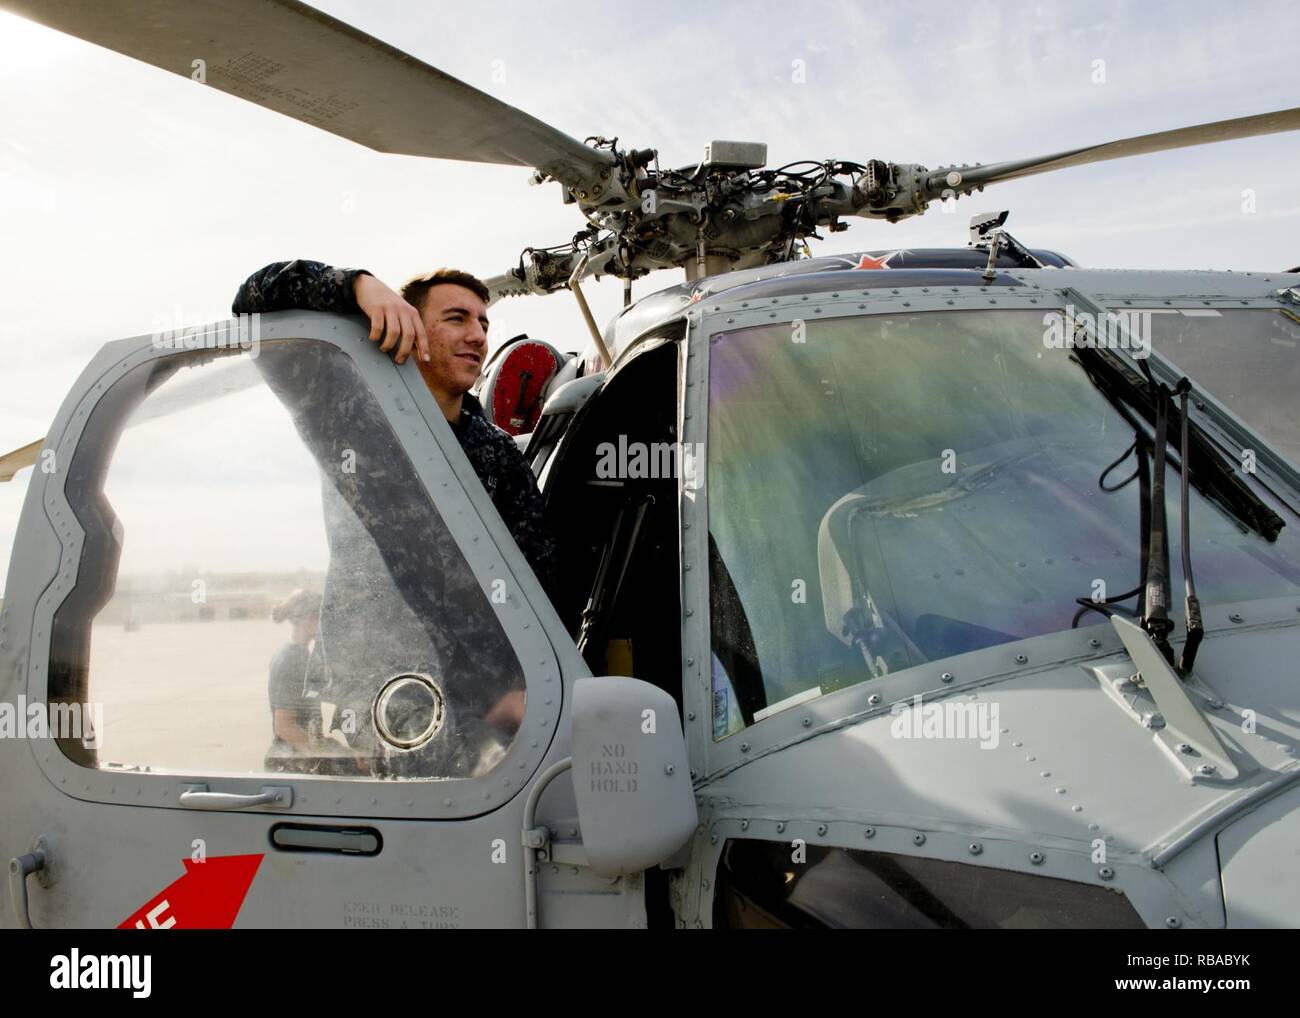 CORONADO, Kalifornien (Jan. 7, 2017) Aviation Electronics Technician 3. Klasse Ryan Baker wartet auf einen MH-60S Sea Hawk, die MERLINS von Hubschrauber Meer Combat Squadron (HSC) 3, Einschalten, bevor die Routine die prüft, zugeordnet. HSC-3 führt kontinuierlich Wartung und Routineprüfungen, um die Einsatzbereitschaft zu erhalten und die maritimen Ziele der US Navy. Stockfoto